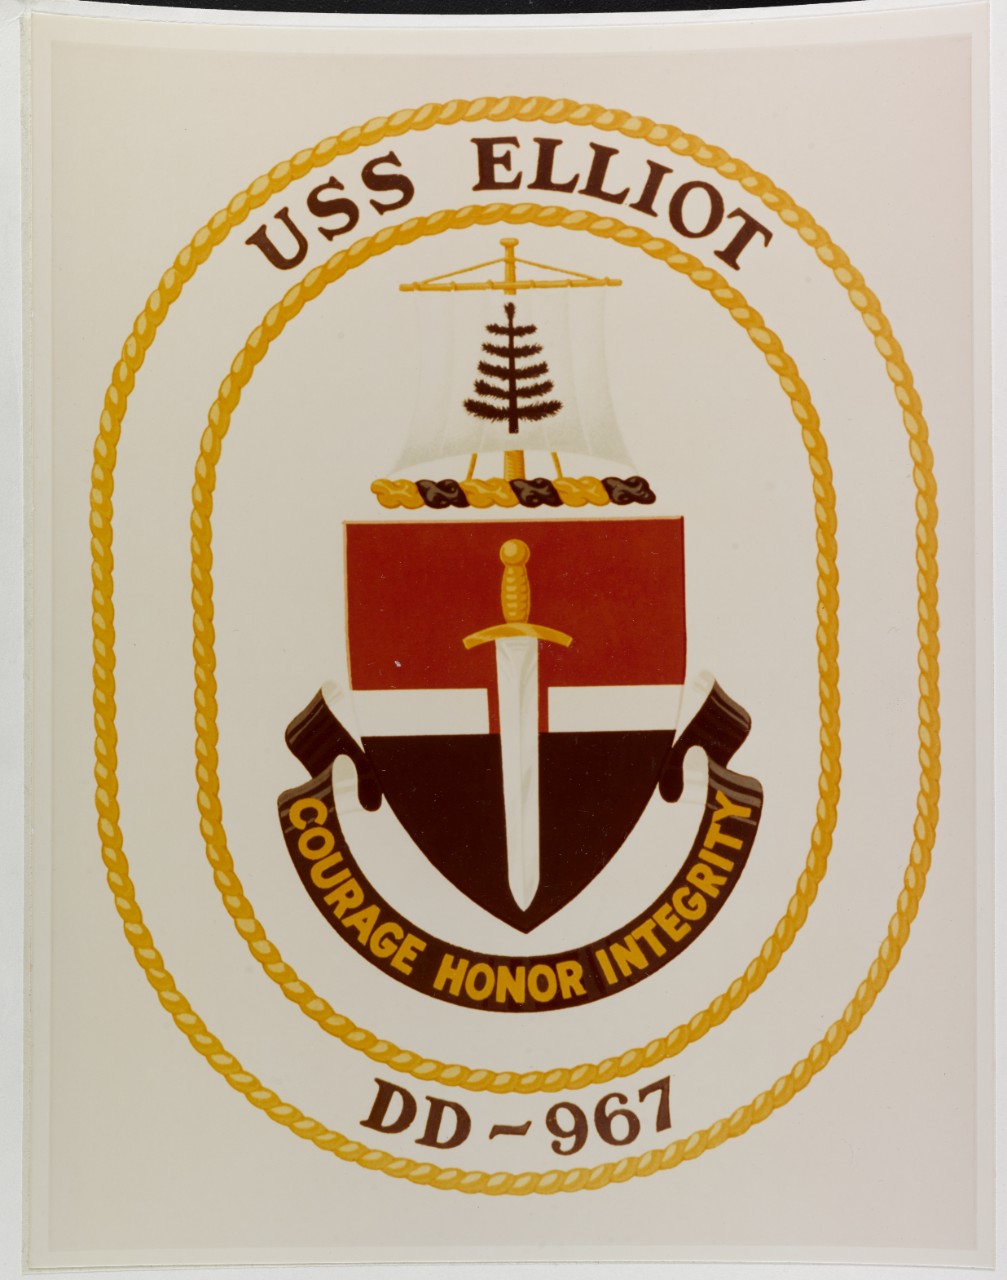 Insignia: USS ELLIOT (DD-967)